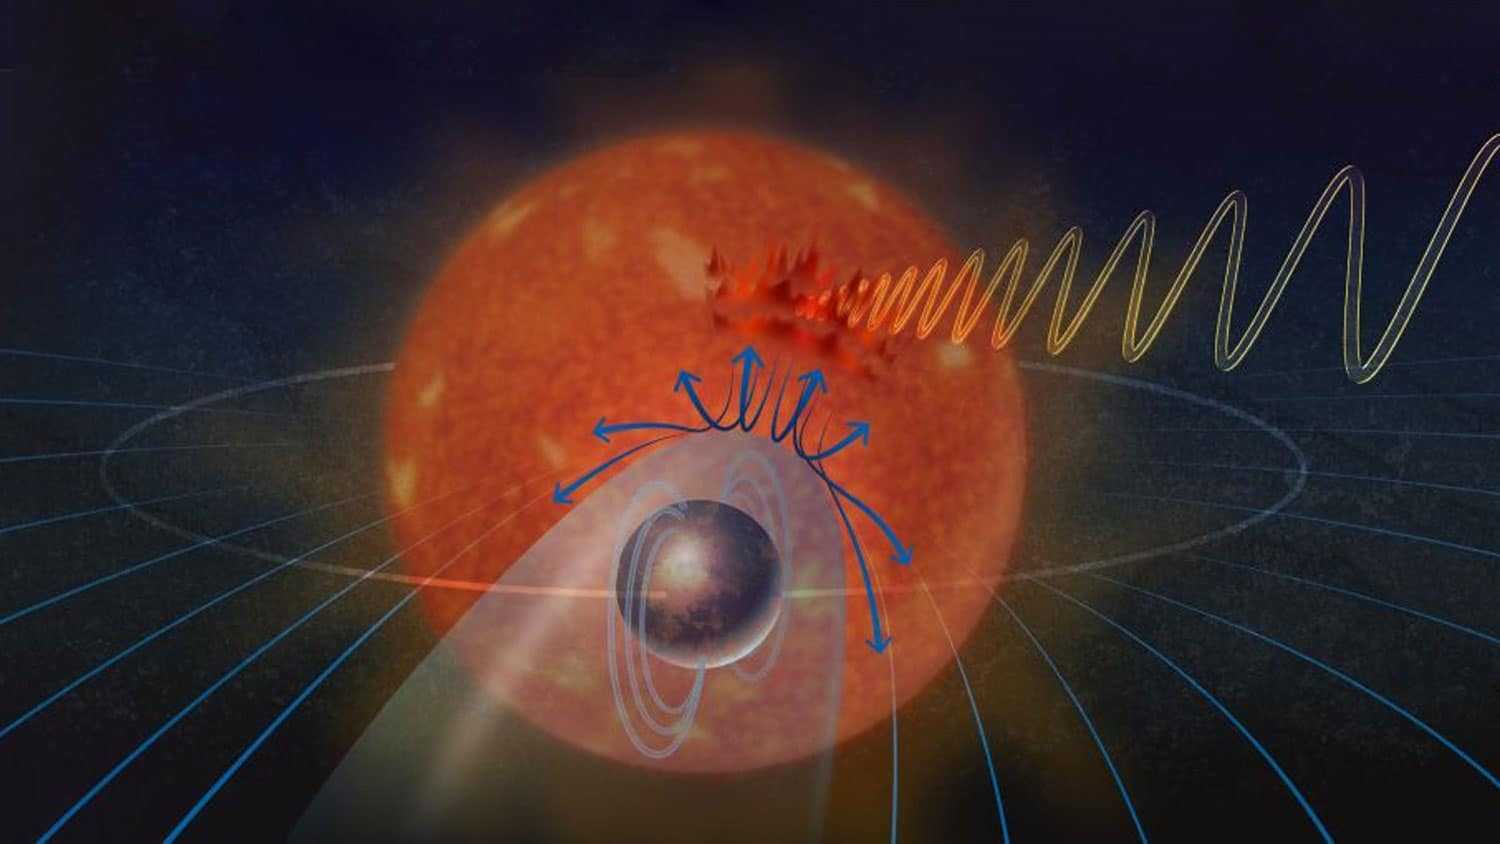 Магнитное поле далекой планеты создает полярные сияния над ее звездой